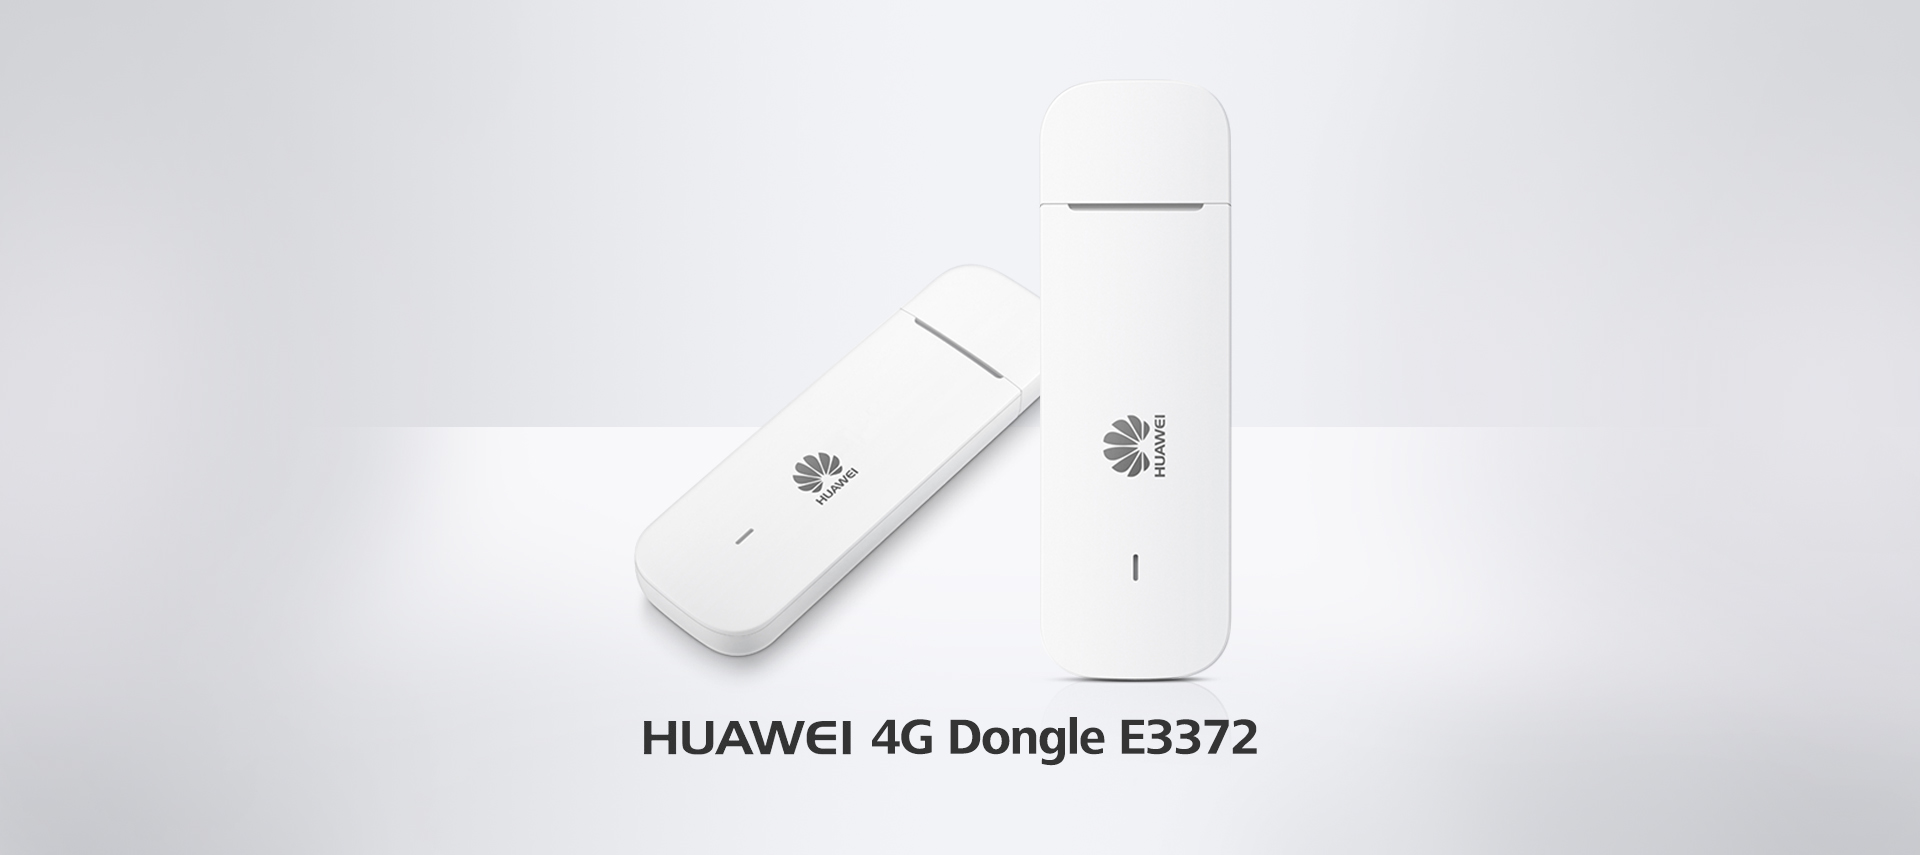 Huawei 4G Dongle E3372